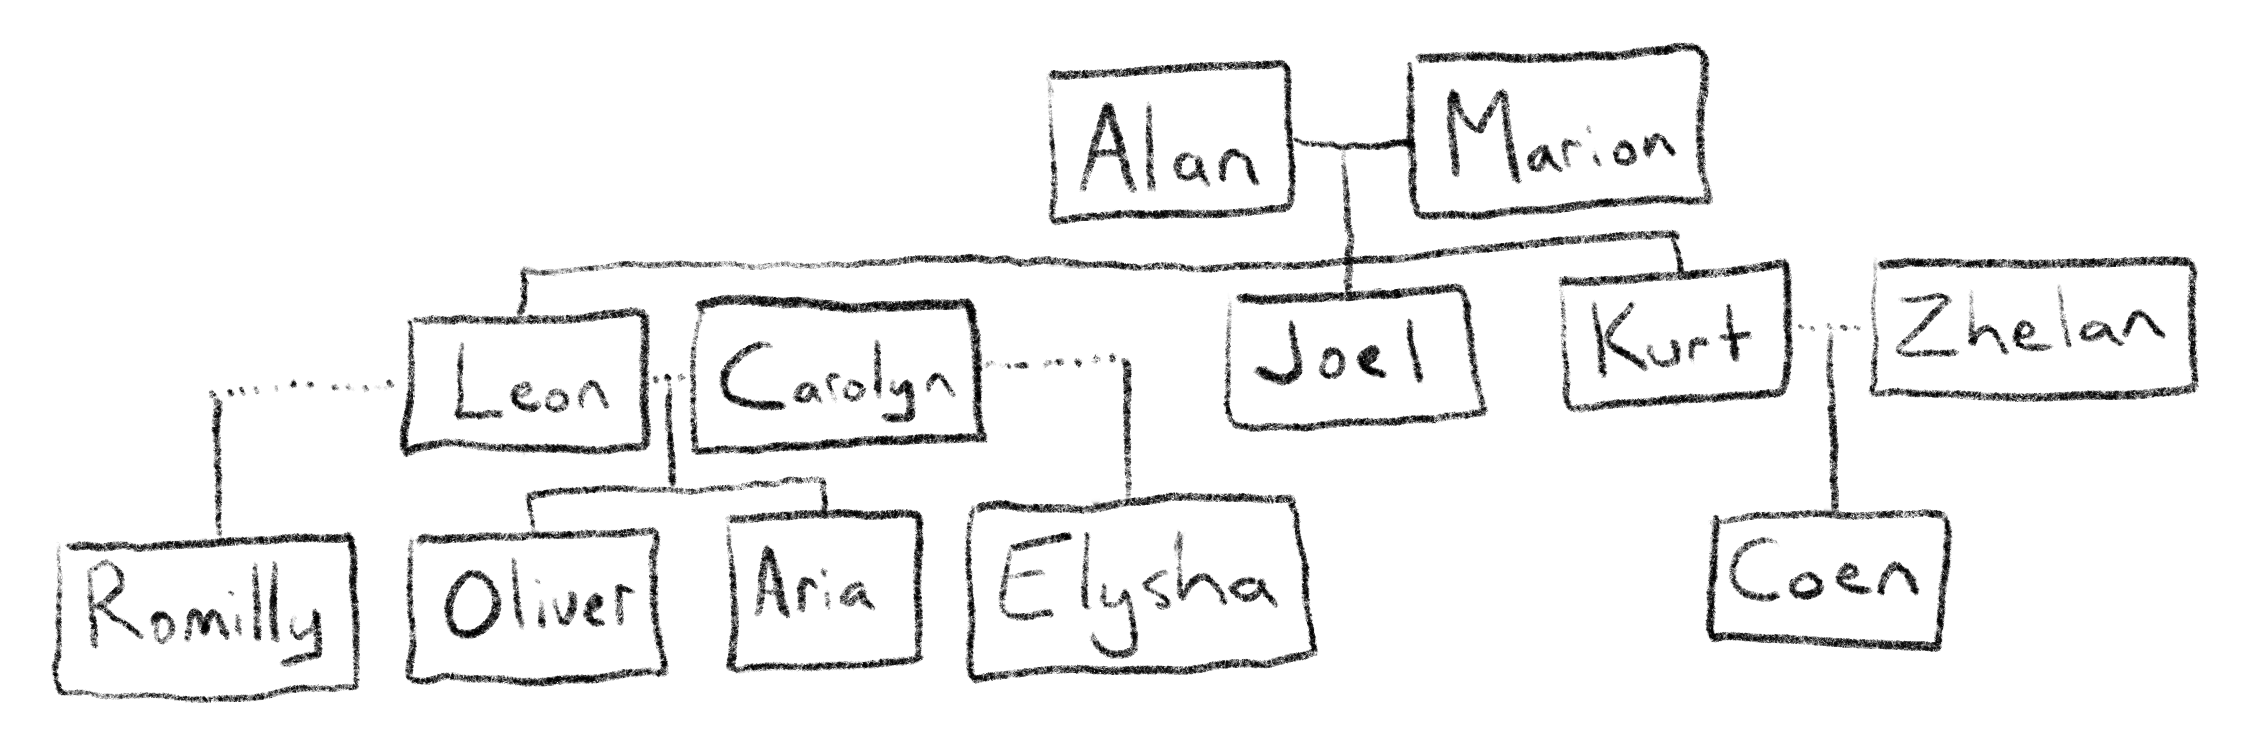 Blackwell family tree